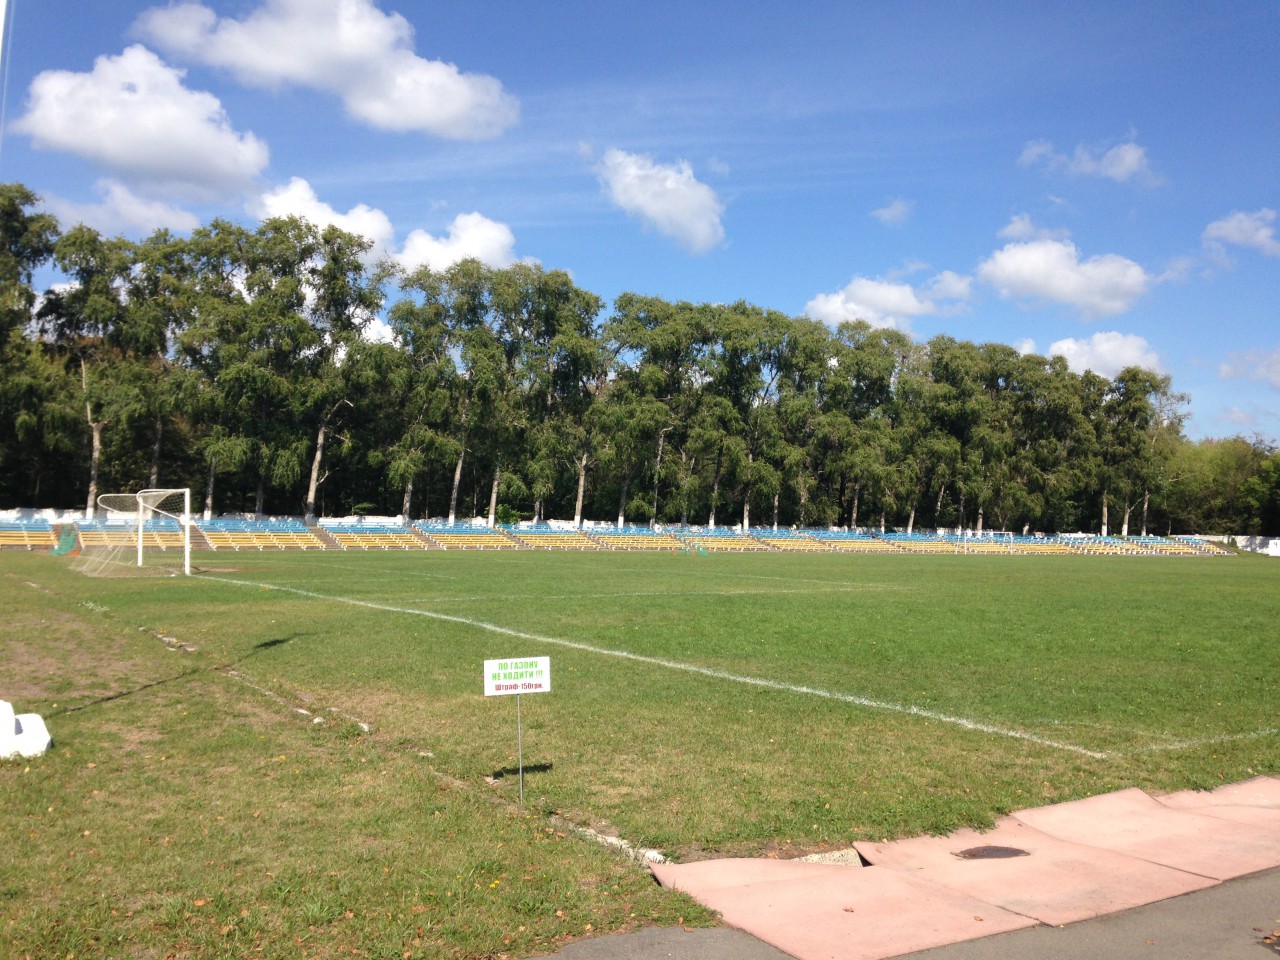 Скільки коштував полив стадіону "Локомотив" влітку для міського бюджету?